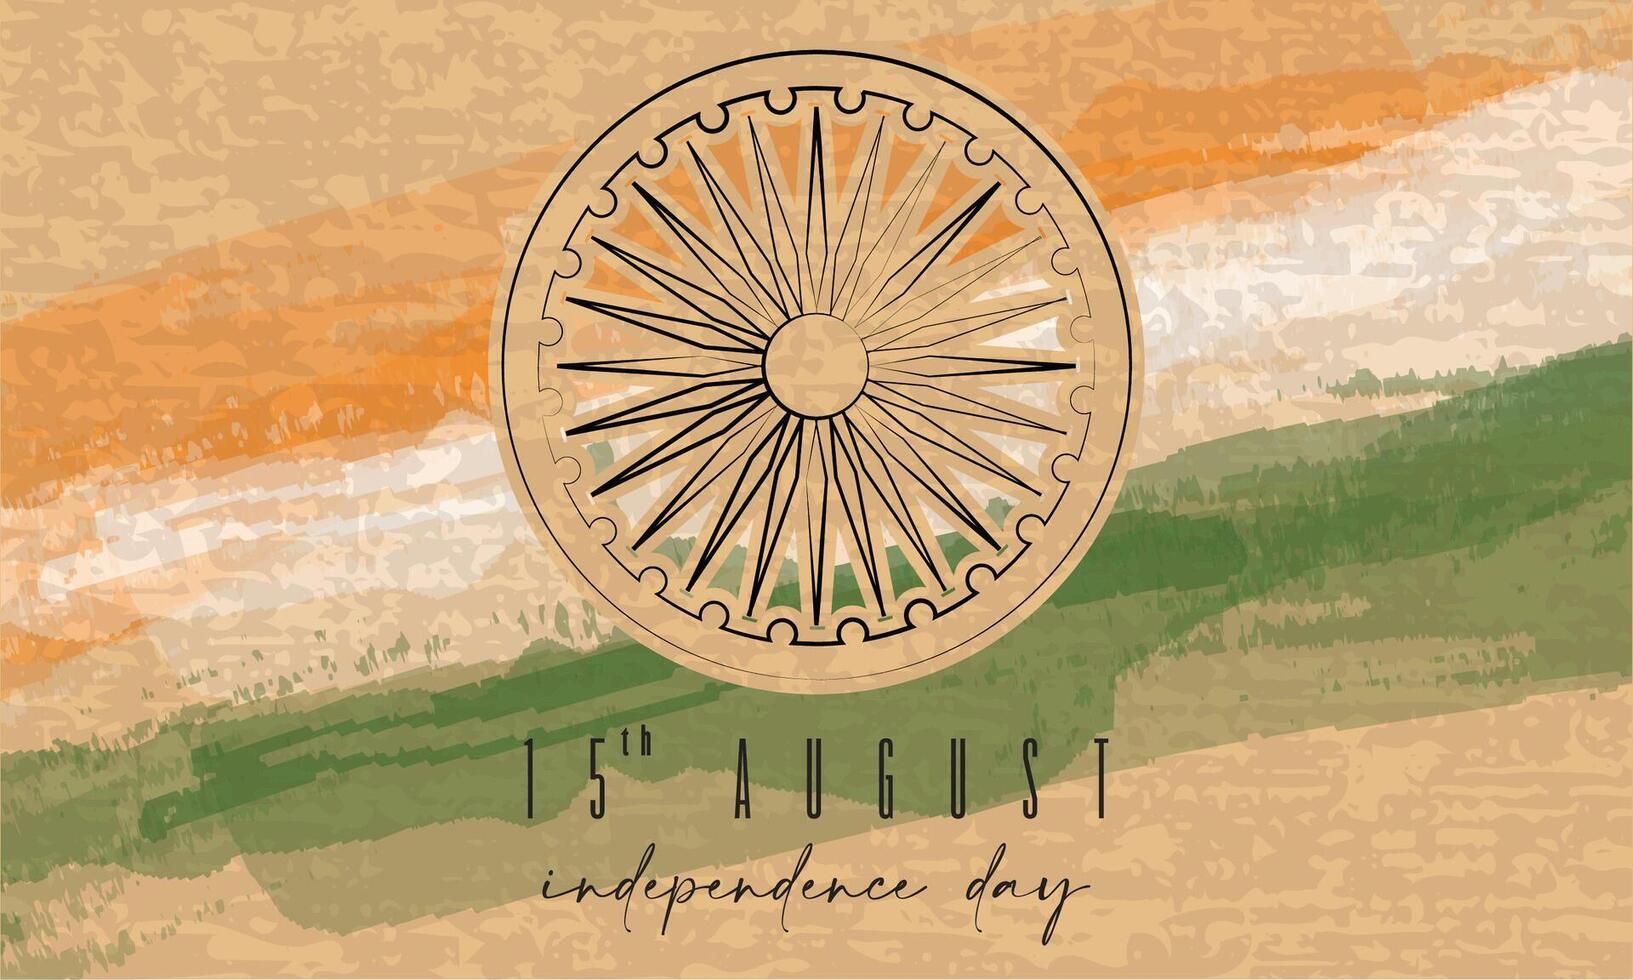 farbig glücklich Indien Unabhängigkeit Tag Poster vektor